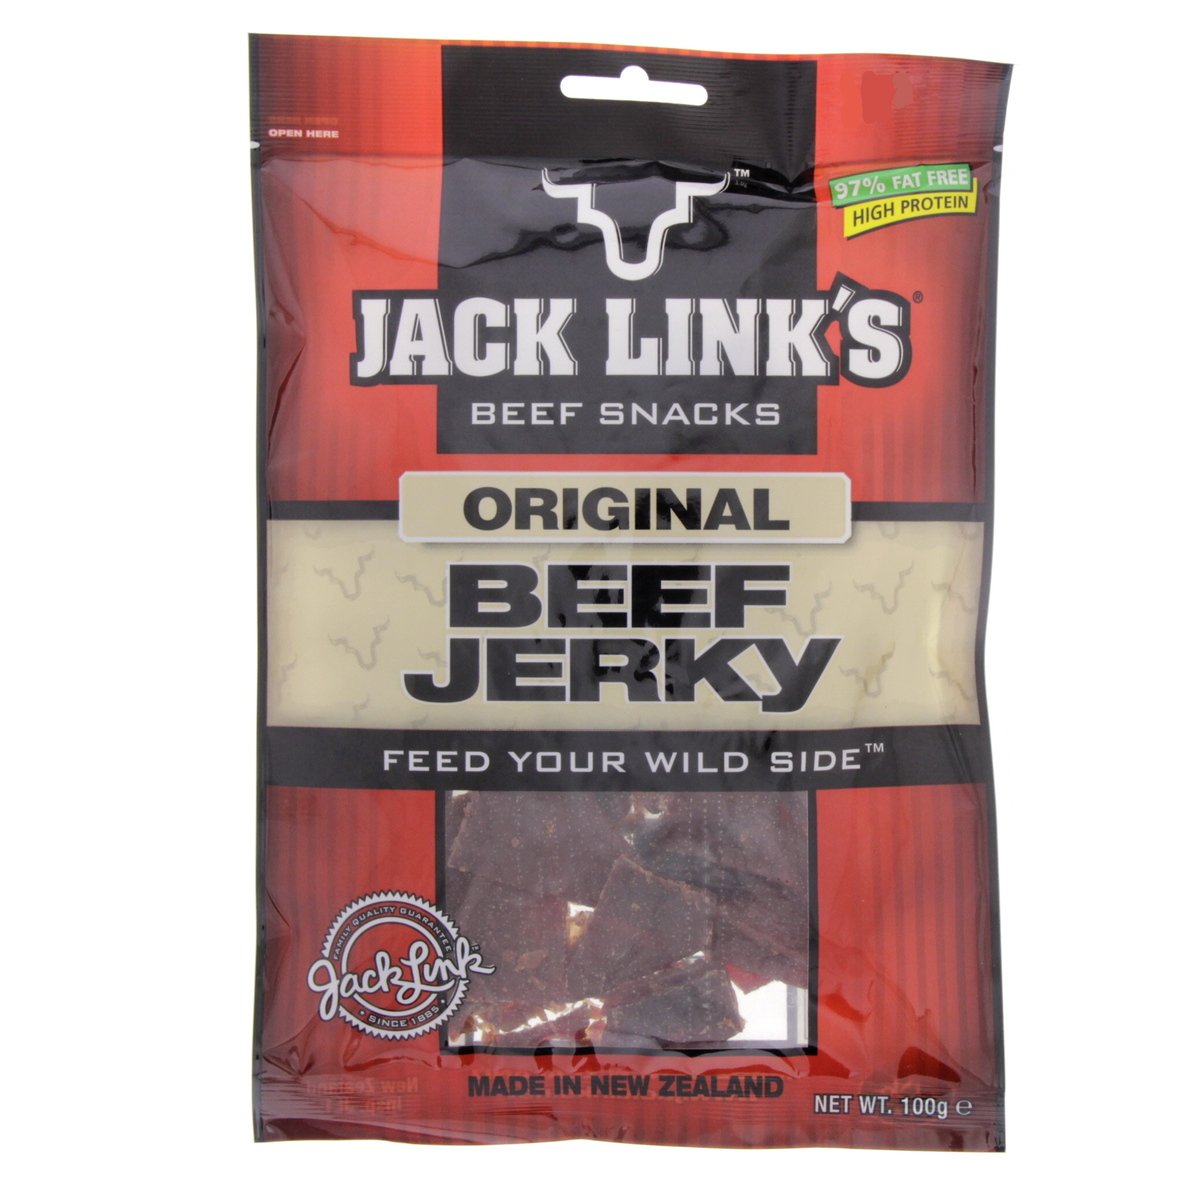 Jack Link's Beef Jerky Original 100 g